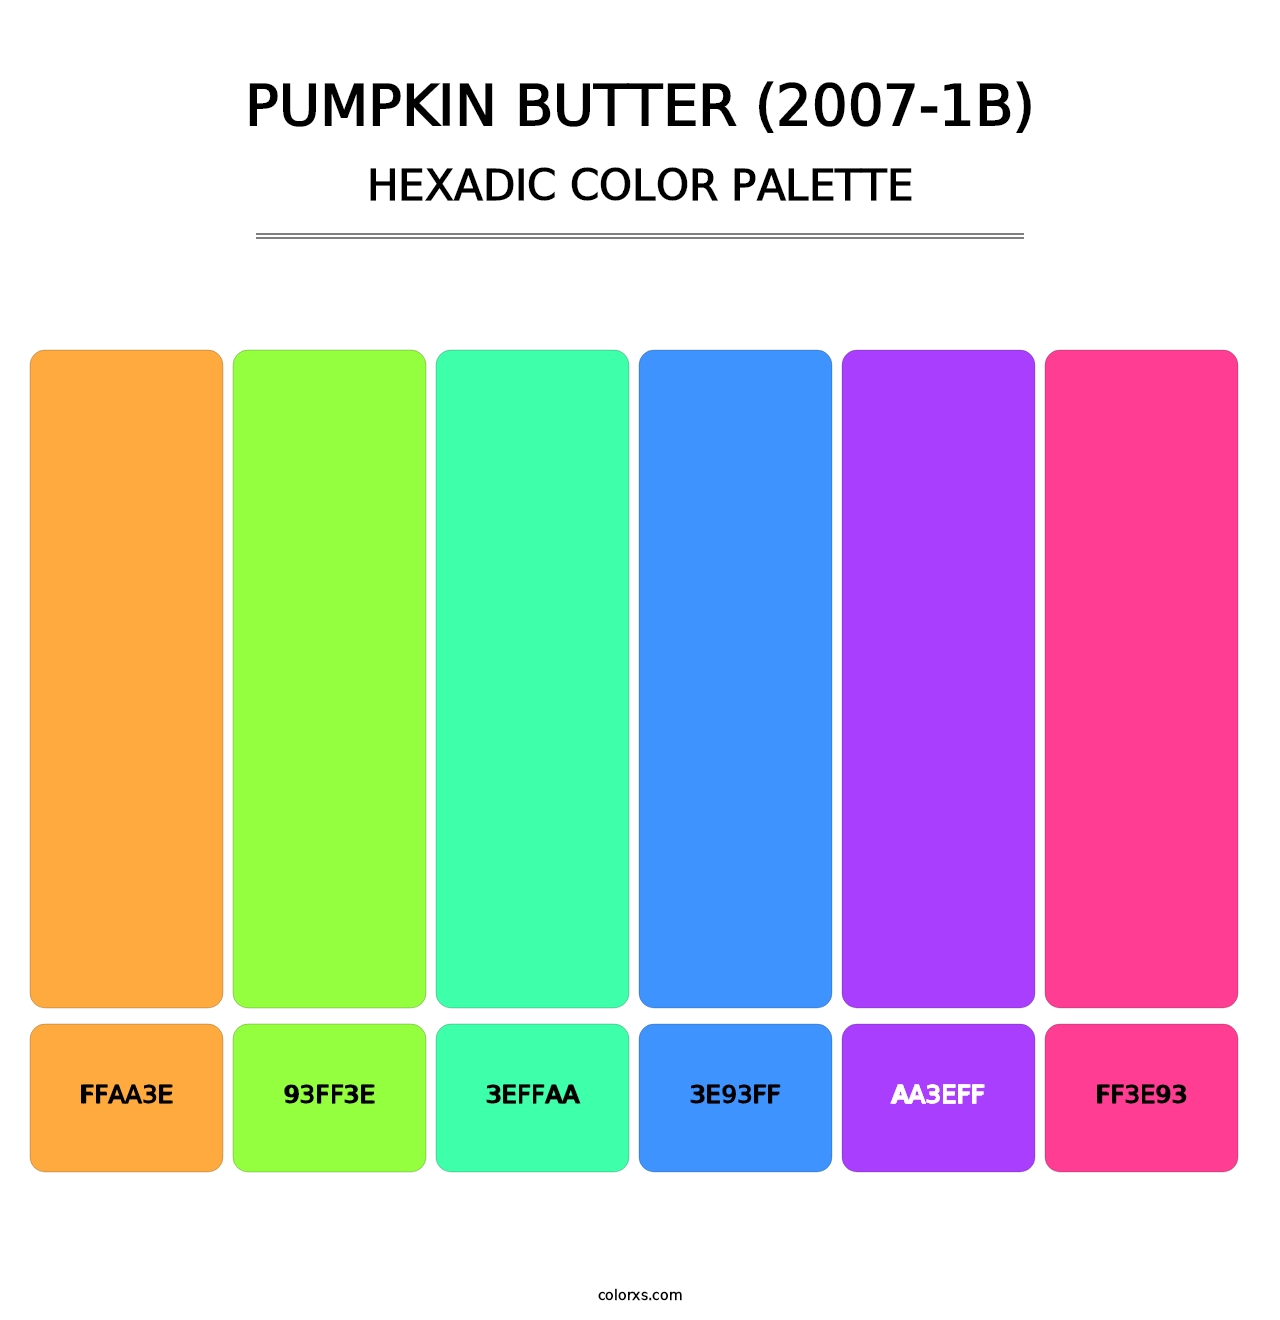 Pumpkin Butter (2007-1B) - Hexadic Color Palette